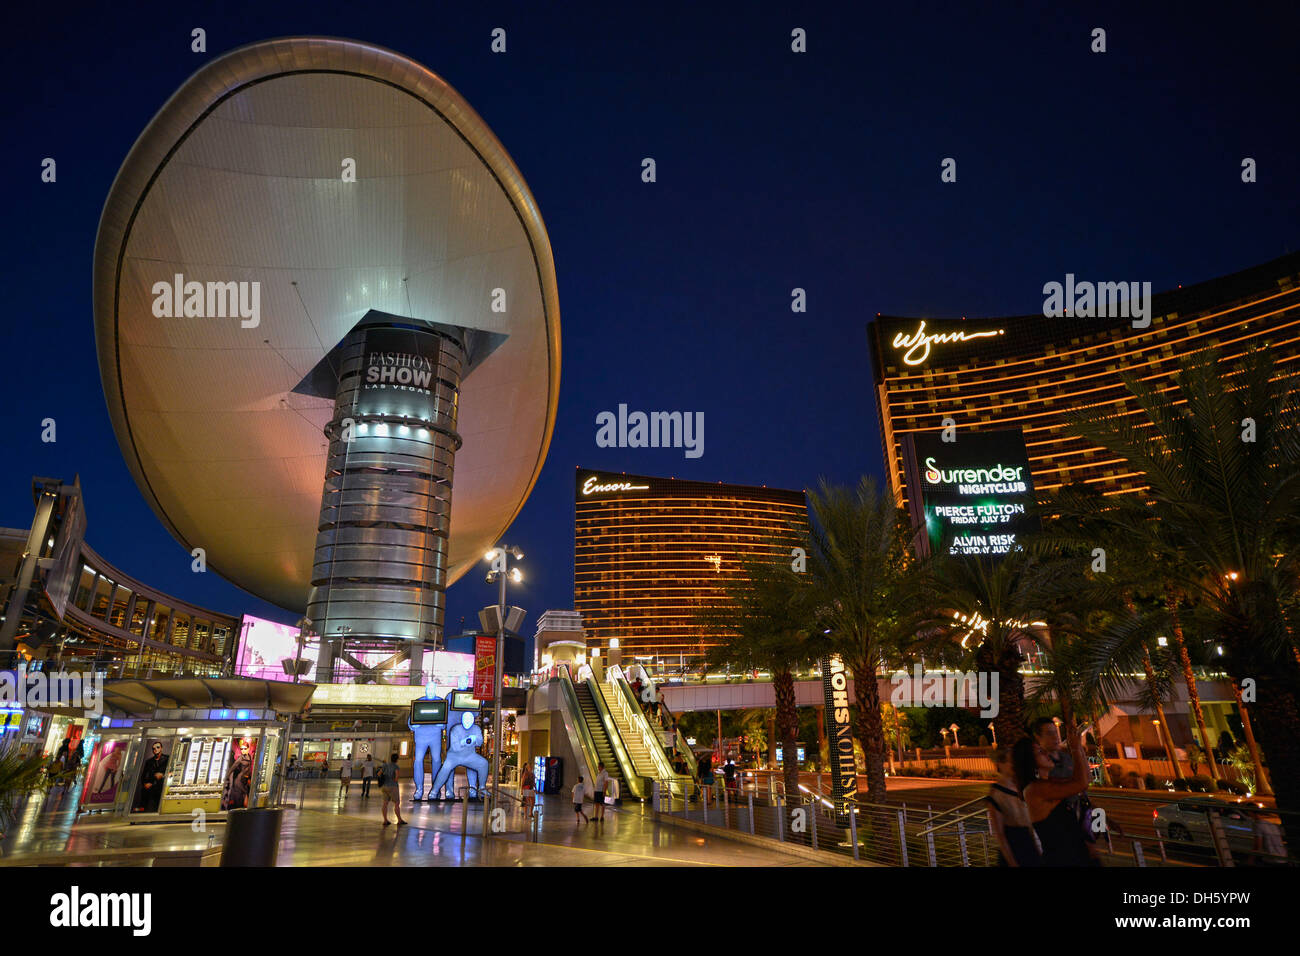 UFO-Look bei der Fashion Show Shopping Mall in der Nacht, Luxushotel, Encore, Paradies, Wynn Casino, Las Vegas, Nevada Stockfoto